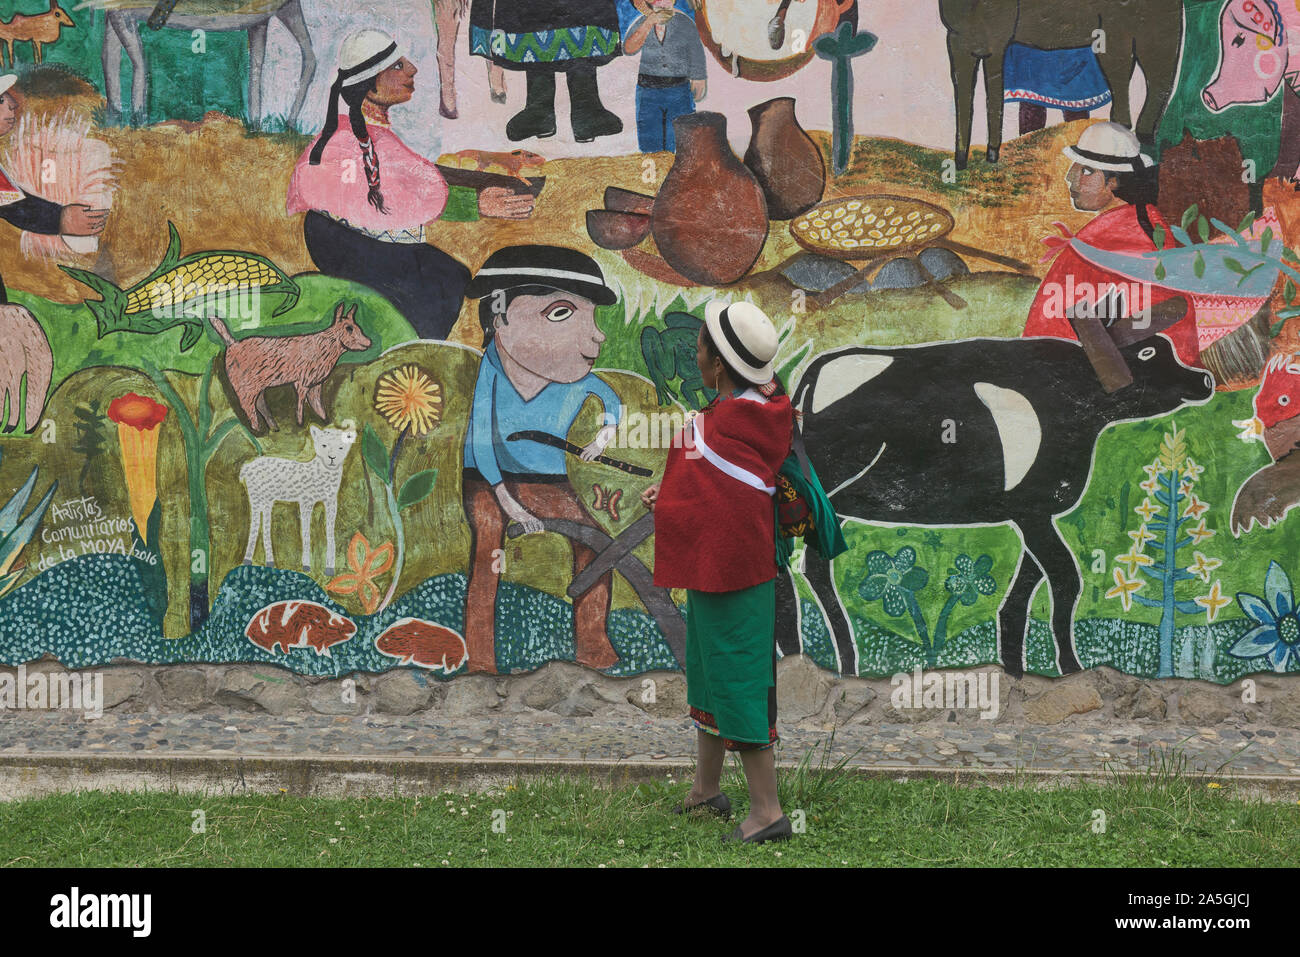 Highlander indigeni ammirando un murale locale, La Moya, Ecuador Foto Stock